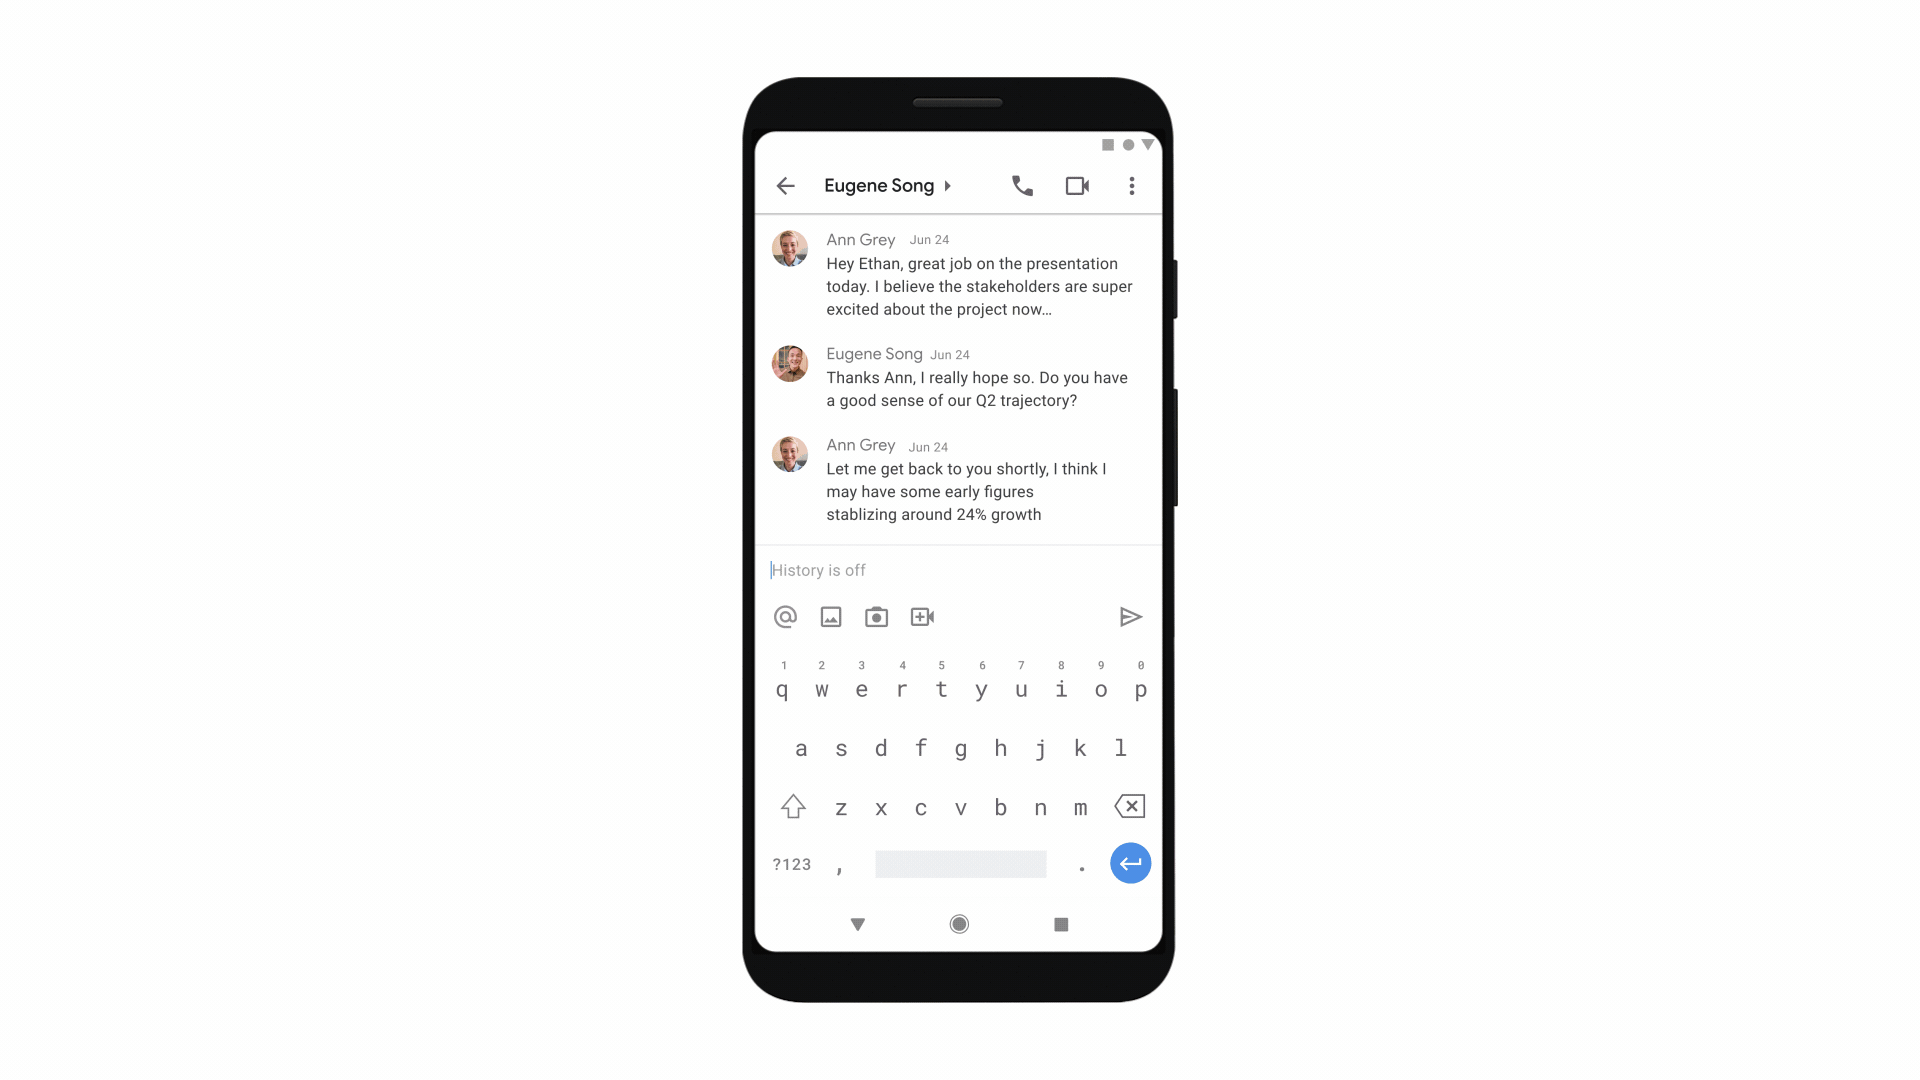 Google Meet låter dig snart starta 1:1-samtal utan inbjudningslänk